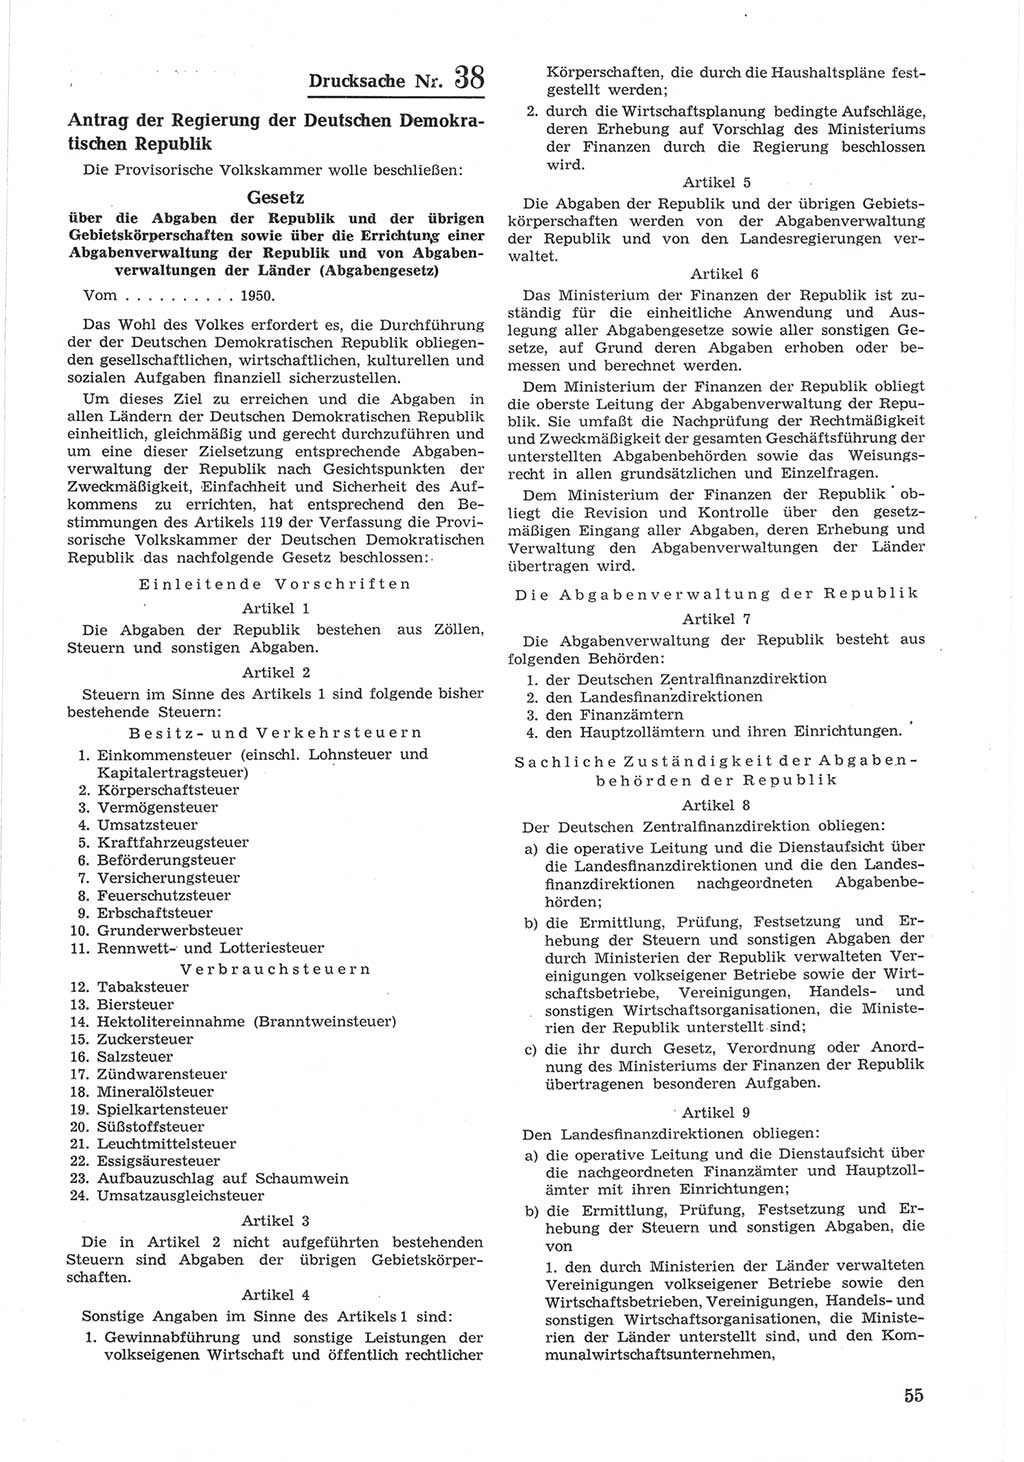 Provisorische Volkskammer (VK) der Deutschen Demokratischen Republik (DDR) 1949-1950, Dokument 655 (Prov. VK DDR 1949-1950, Dok. 655)